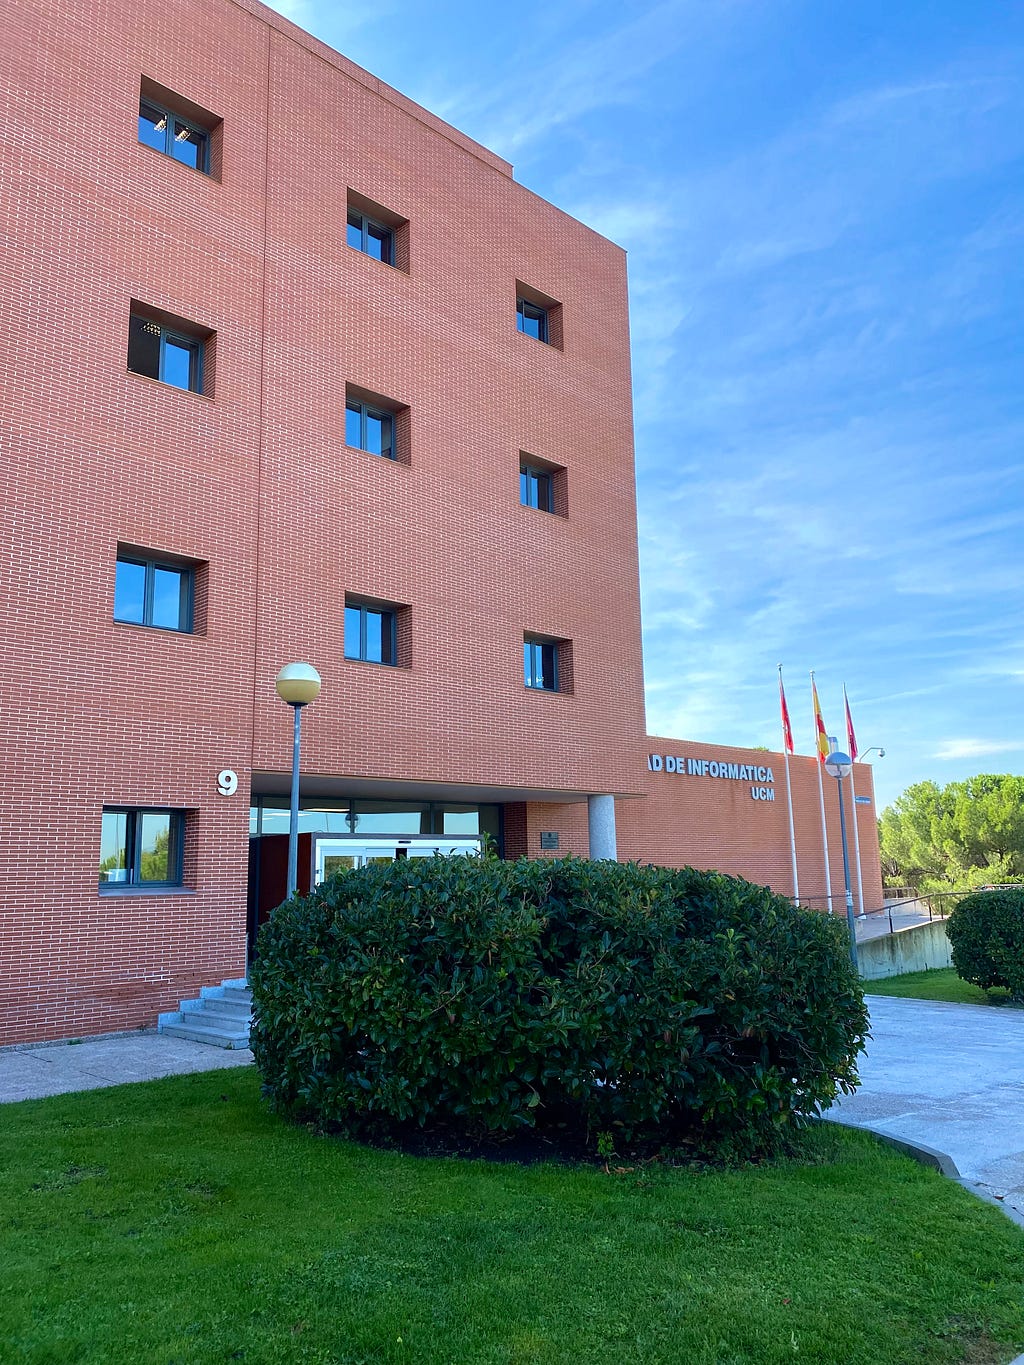 Facultad de Informatica, Madrid